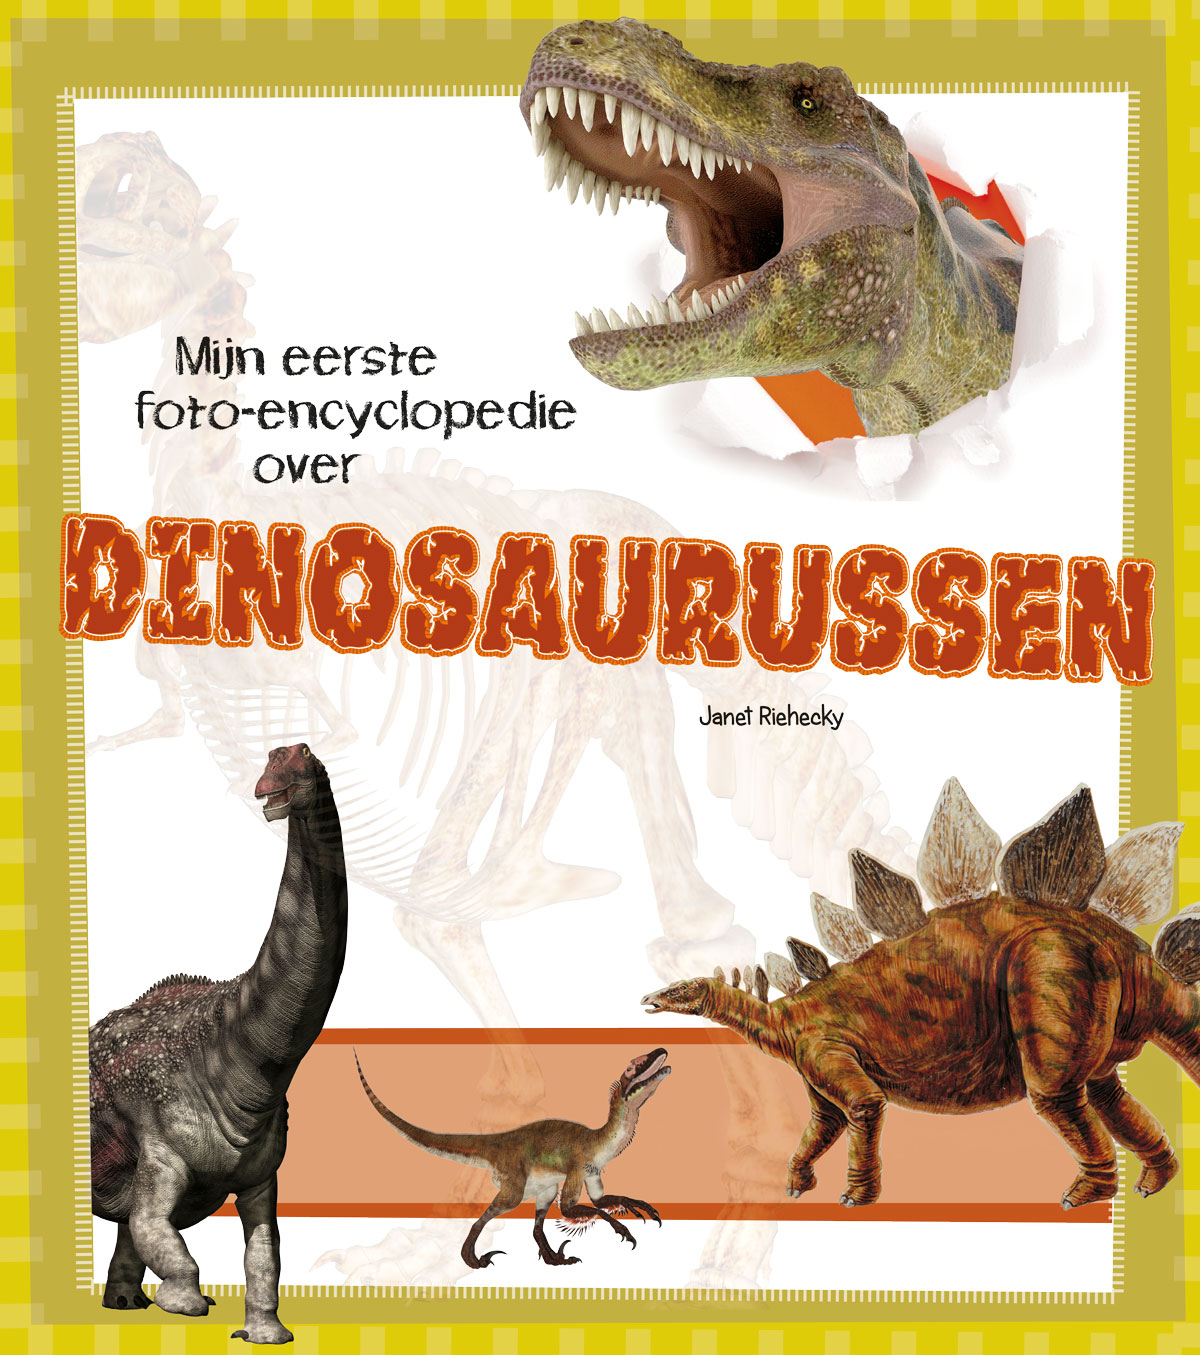 CNBMFO008 Dinosaurussen